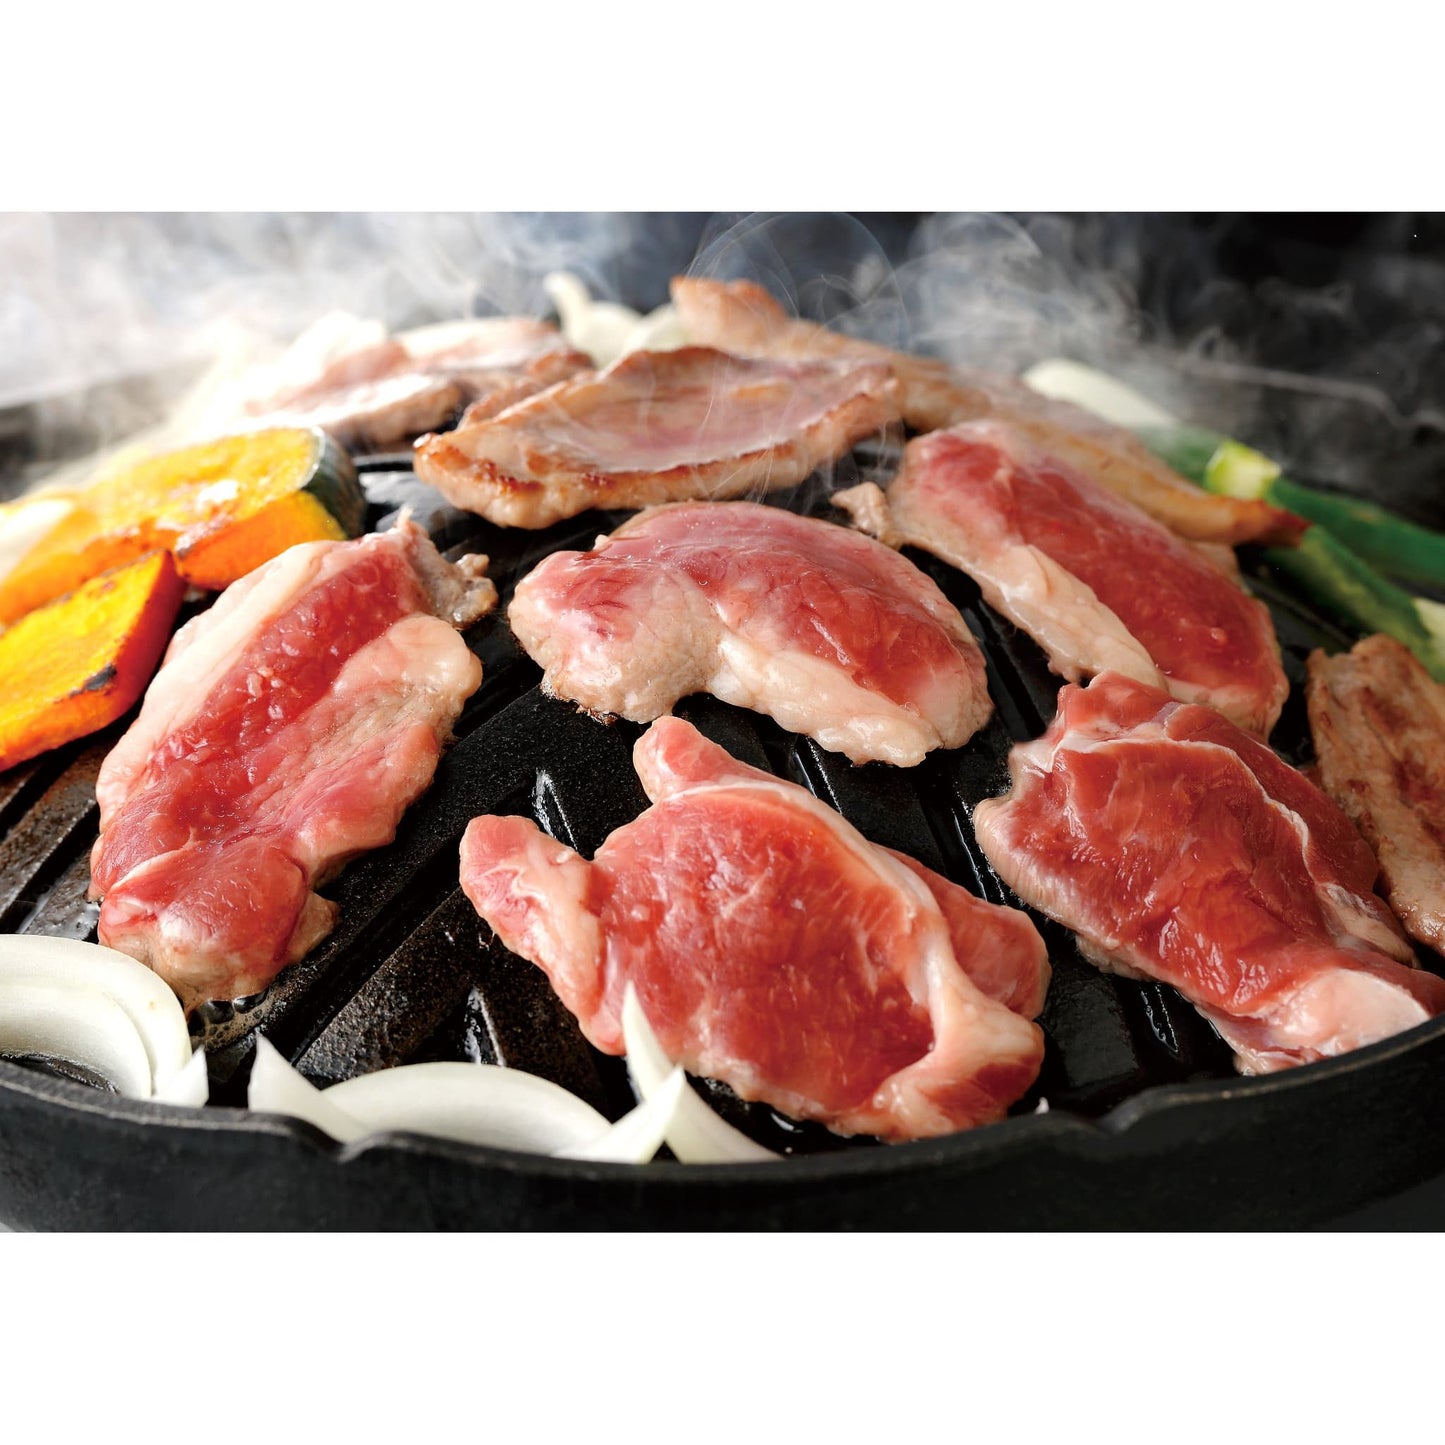 【送料込み】【北海道】肉の山本 生ラム たれ付き 400g